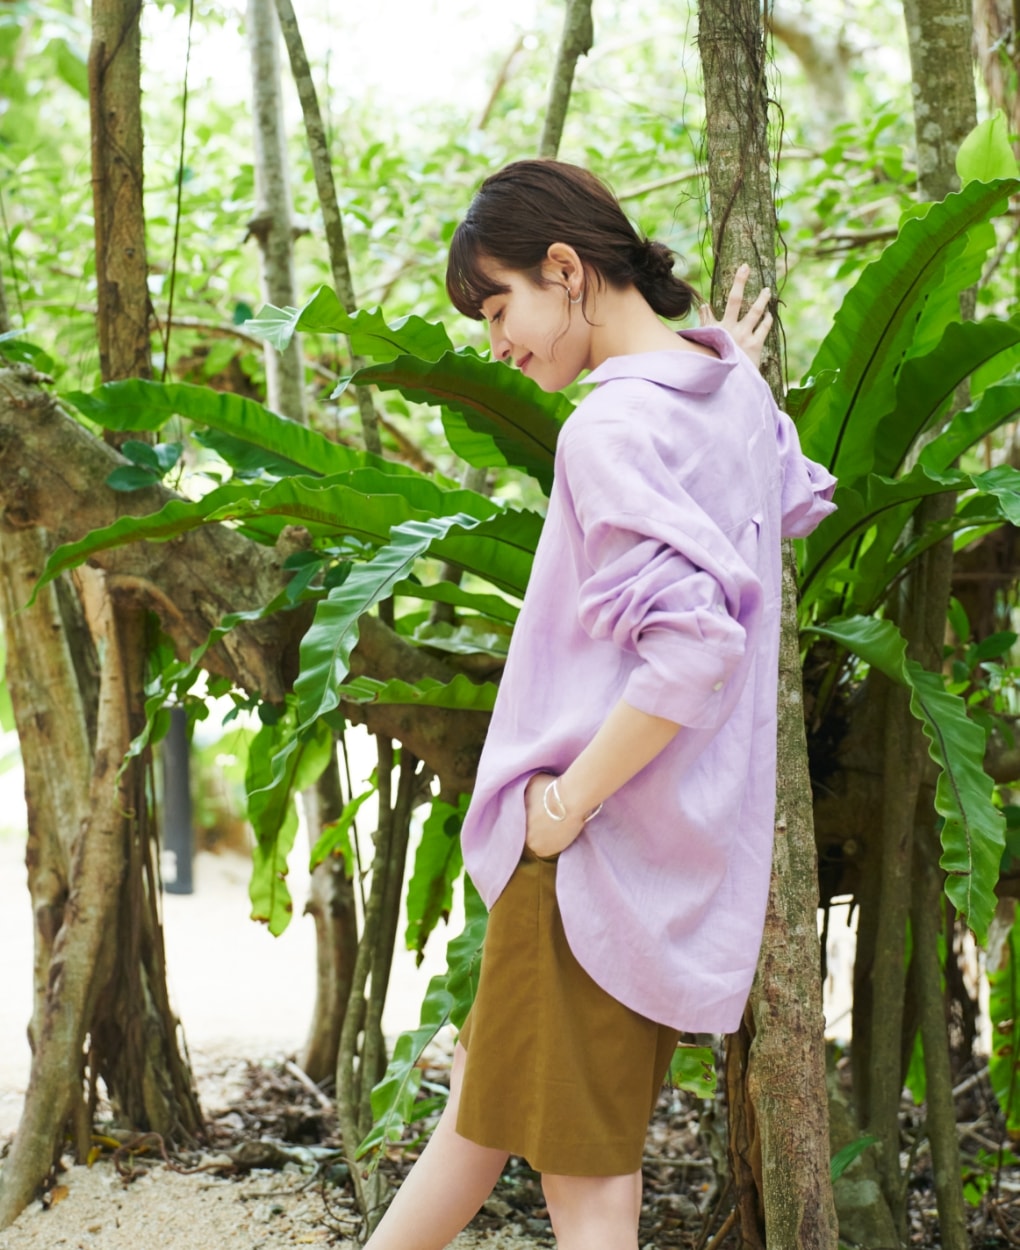 LINENシャツとコットンリネンショートパンツを着用した女性が木に手をついて下を向いている写真